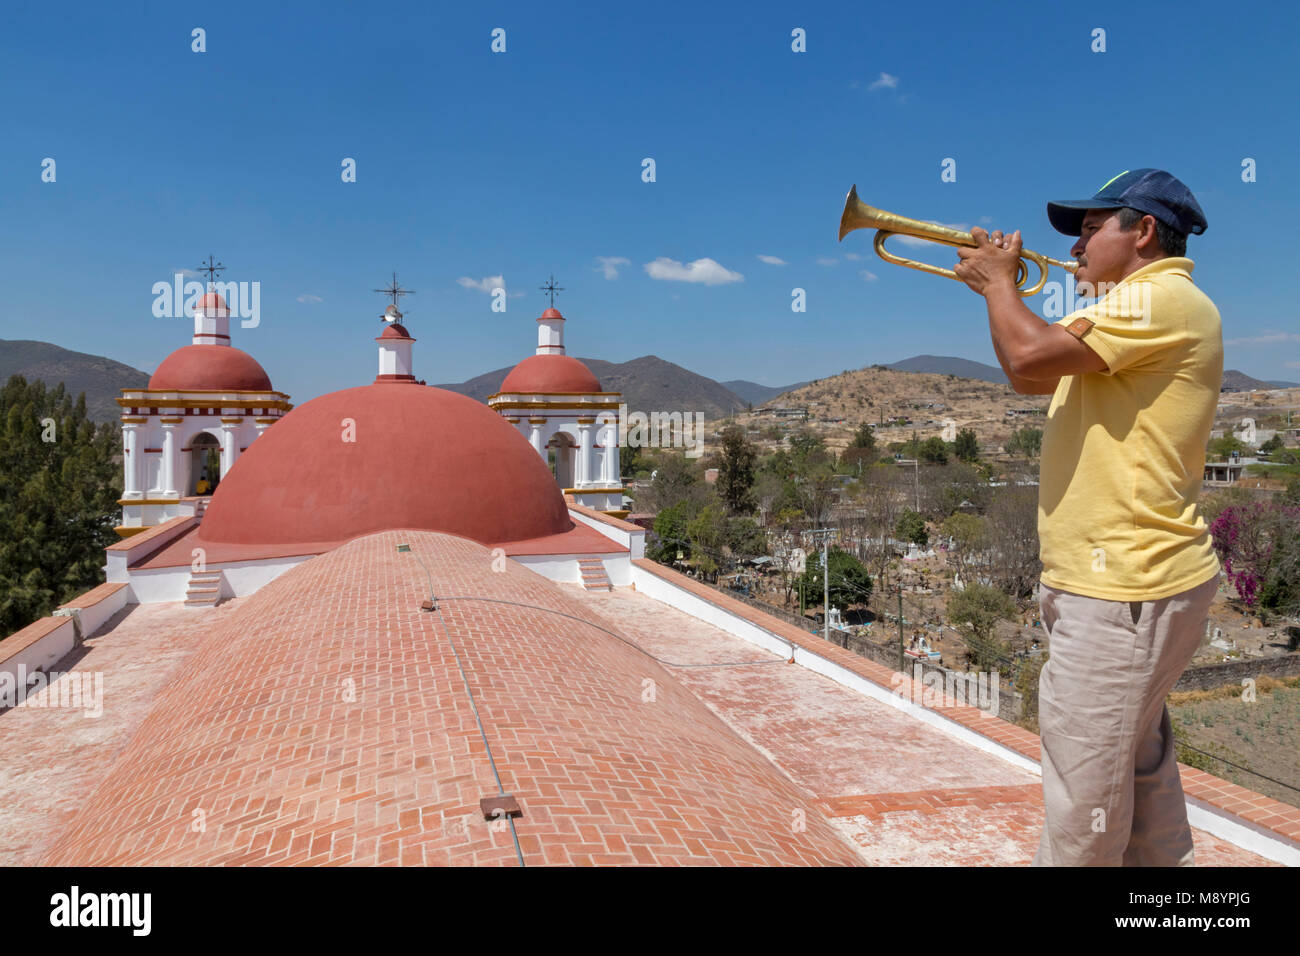 San Juan Teitipac, Oaxaca, Mexiko - ein Mann spielt eine Horn auf dem Dach des 16. Jahrhunderts dominikanische Kirche in einem kleinen Zapotec Stadt. Stockfoto